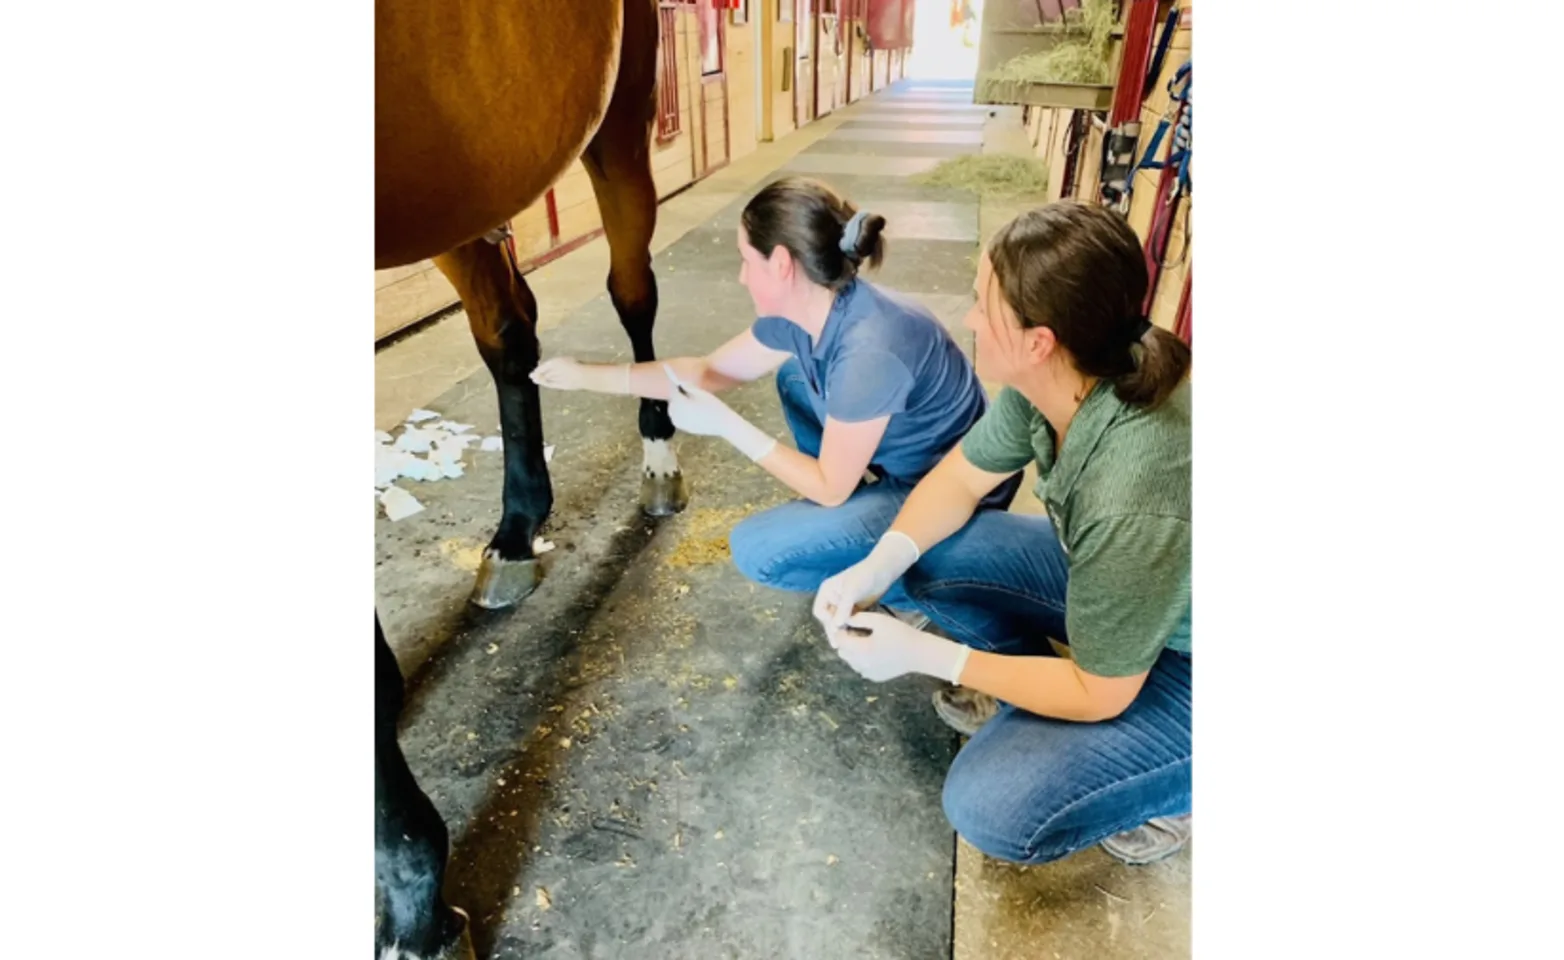 Staff examining horse's leg